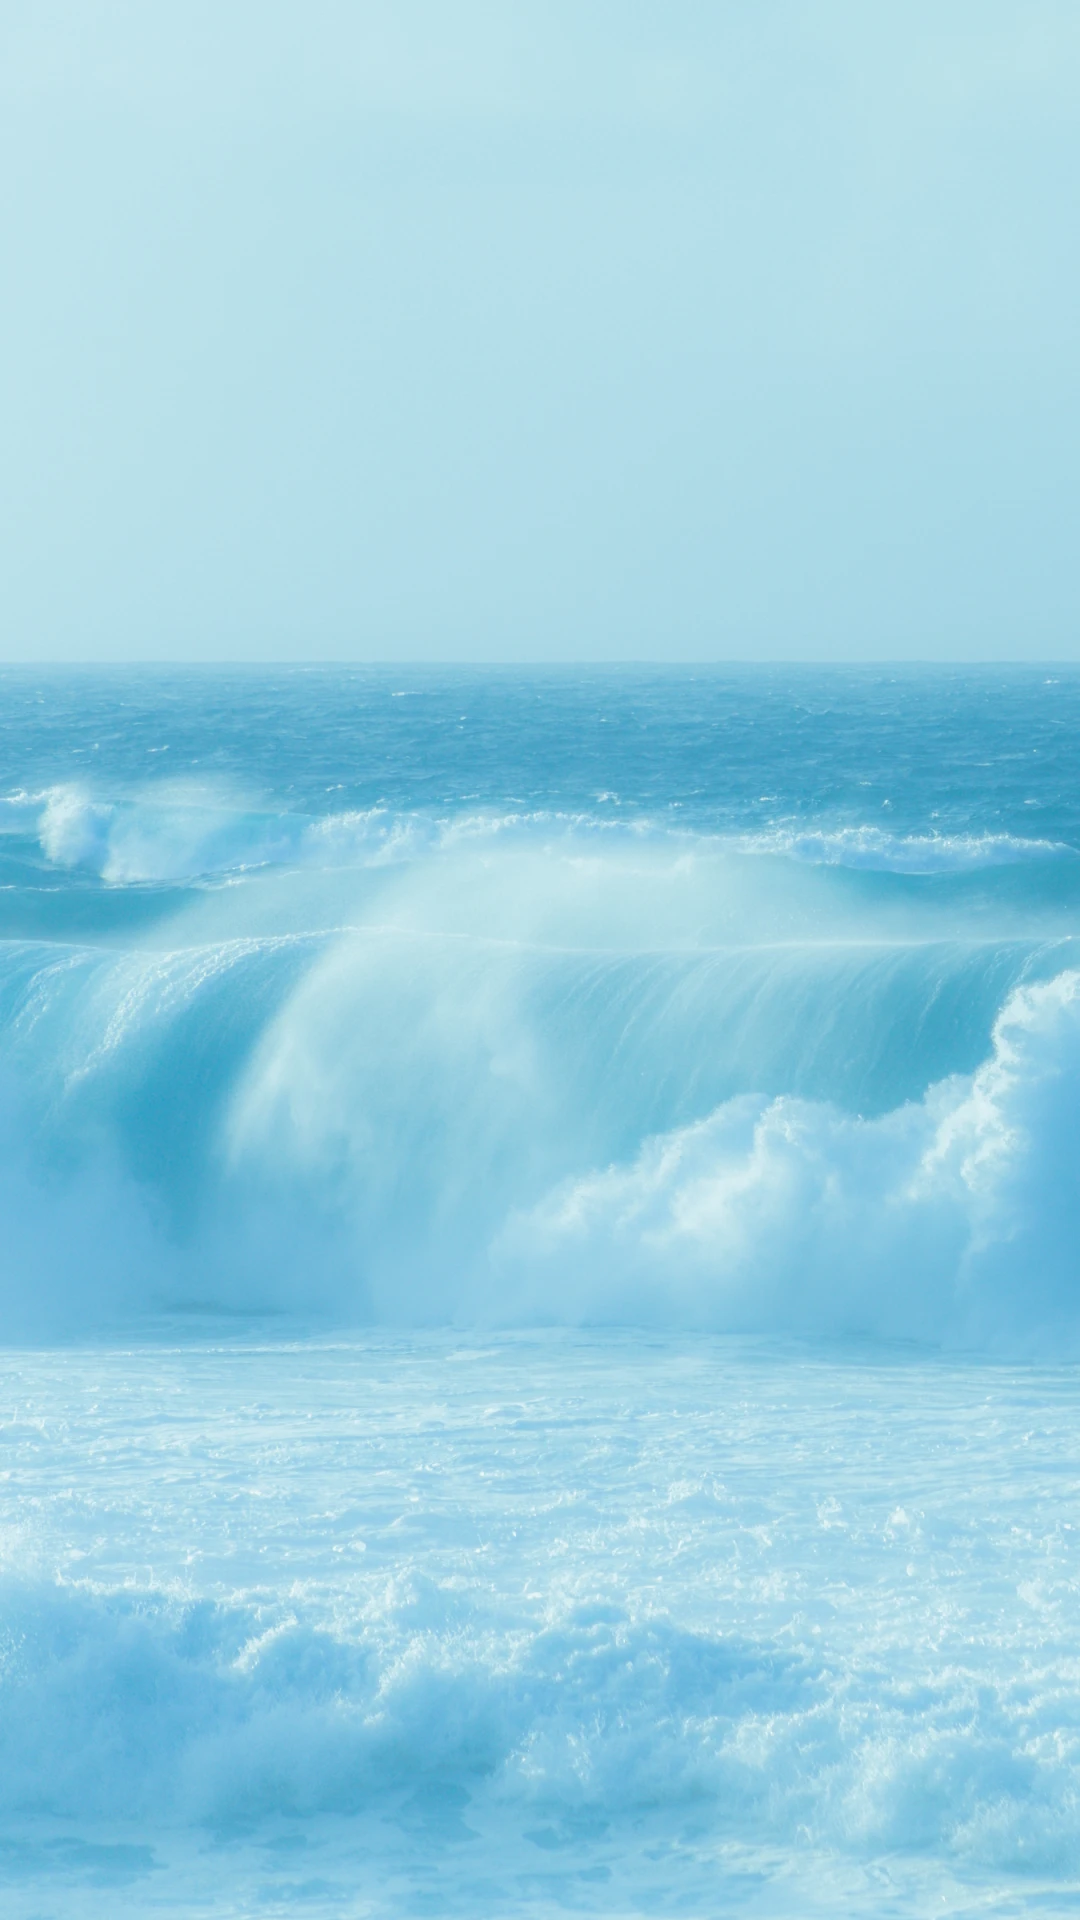 沁润之色 夏日纯净海洋 创意风景 高清手机壁纸-PixStock 源像素